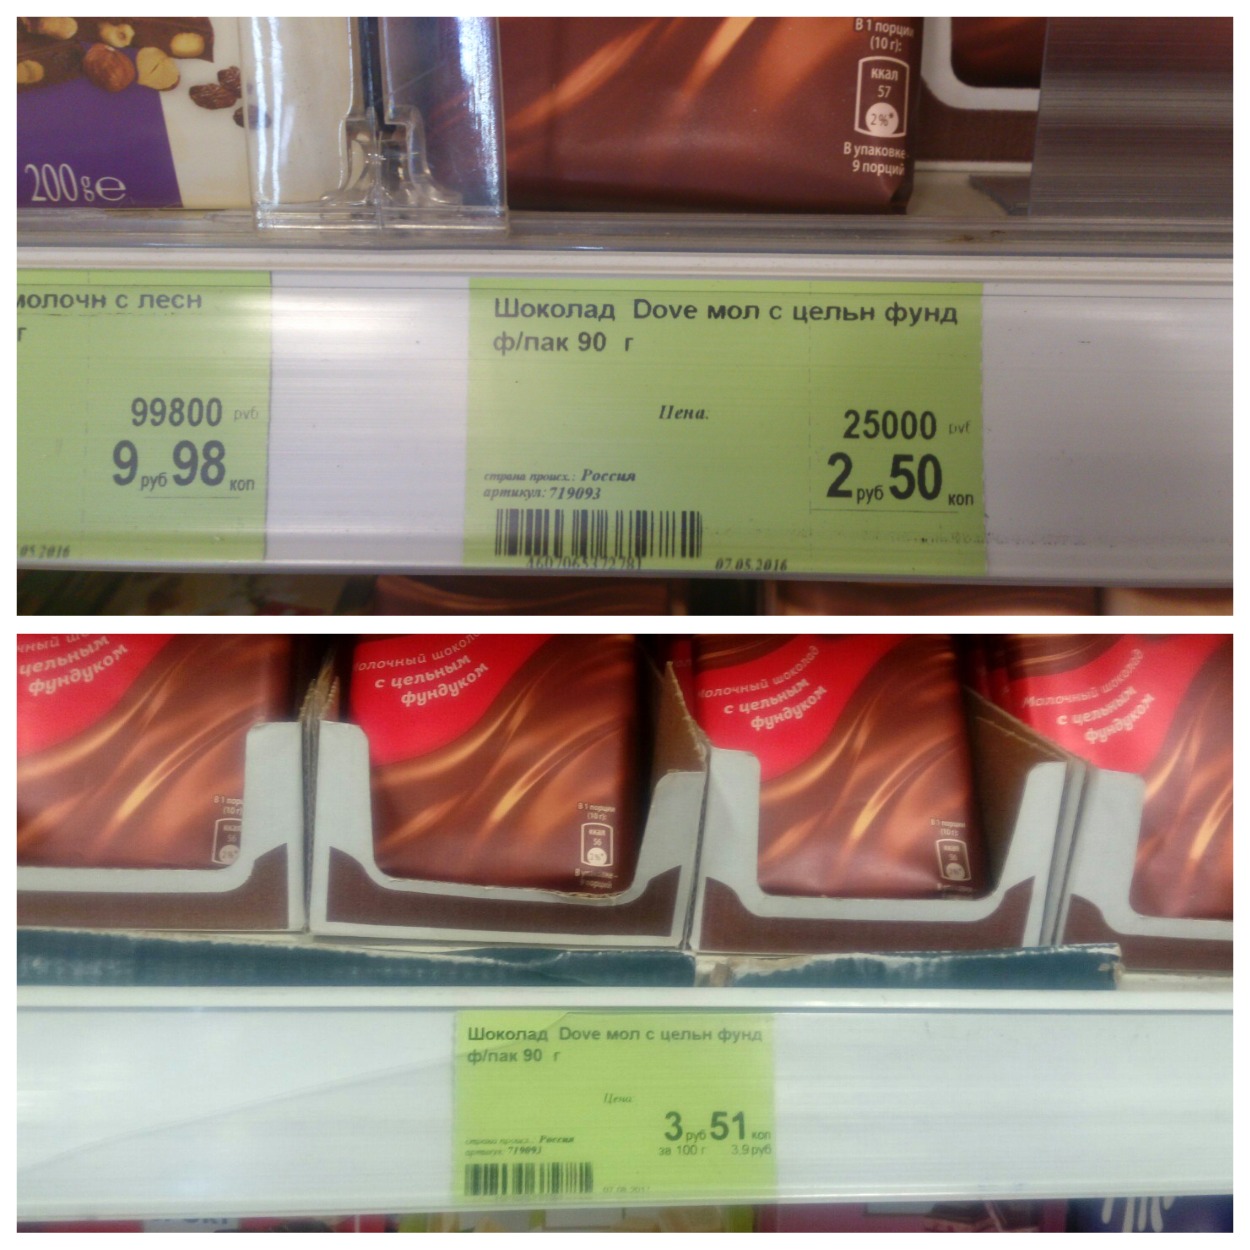 Инфляция Белстата против ценников в магазинах: разница в два раза